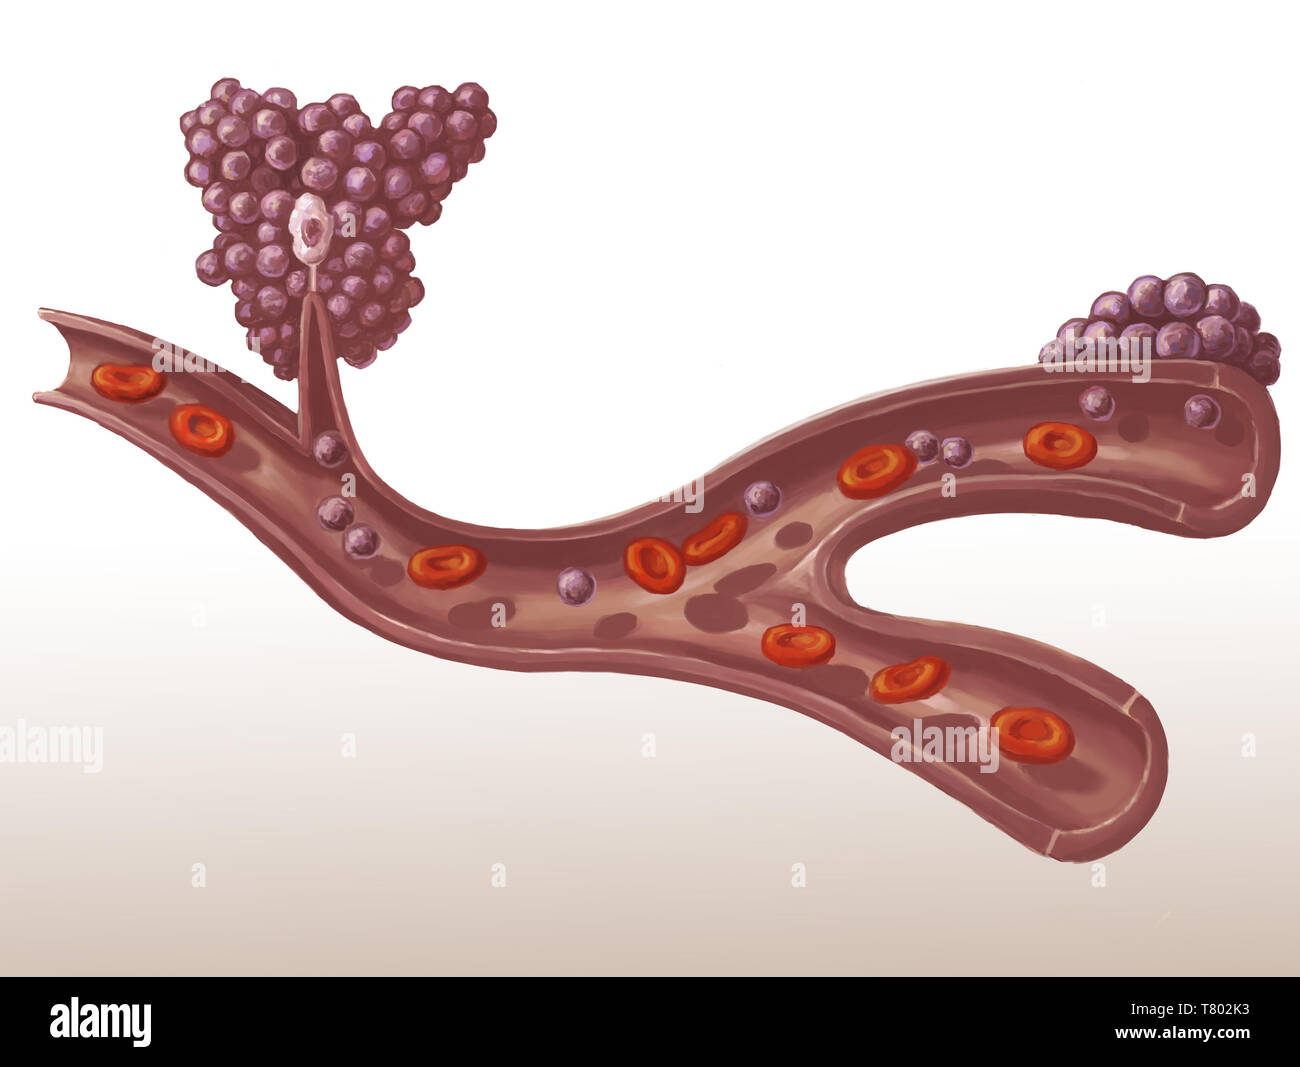 Metastasis of a Tumor, Illustration Stock Photo